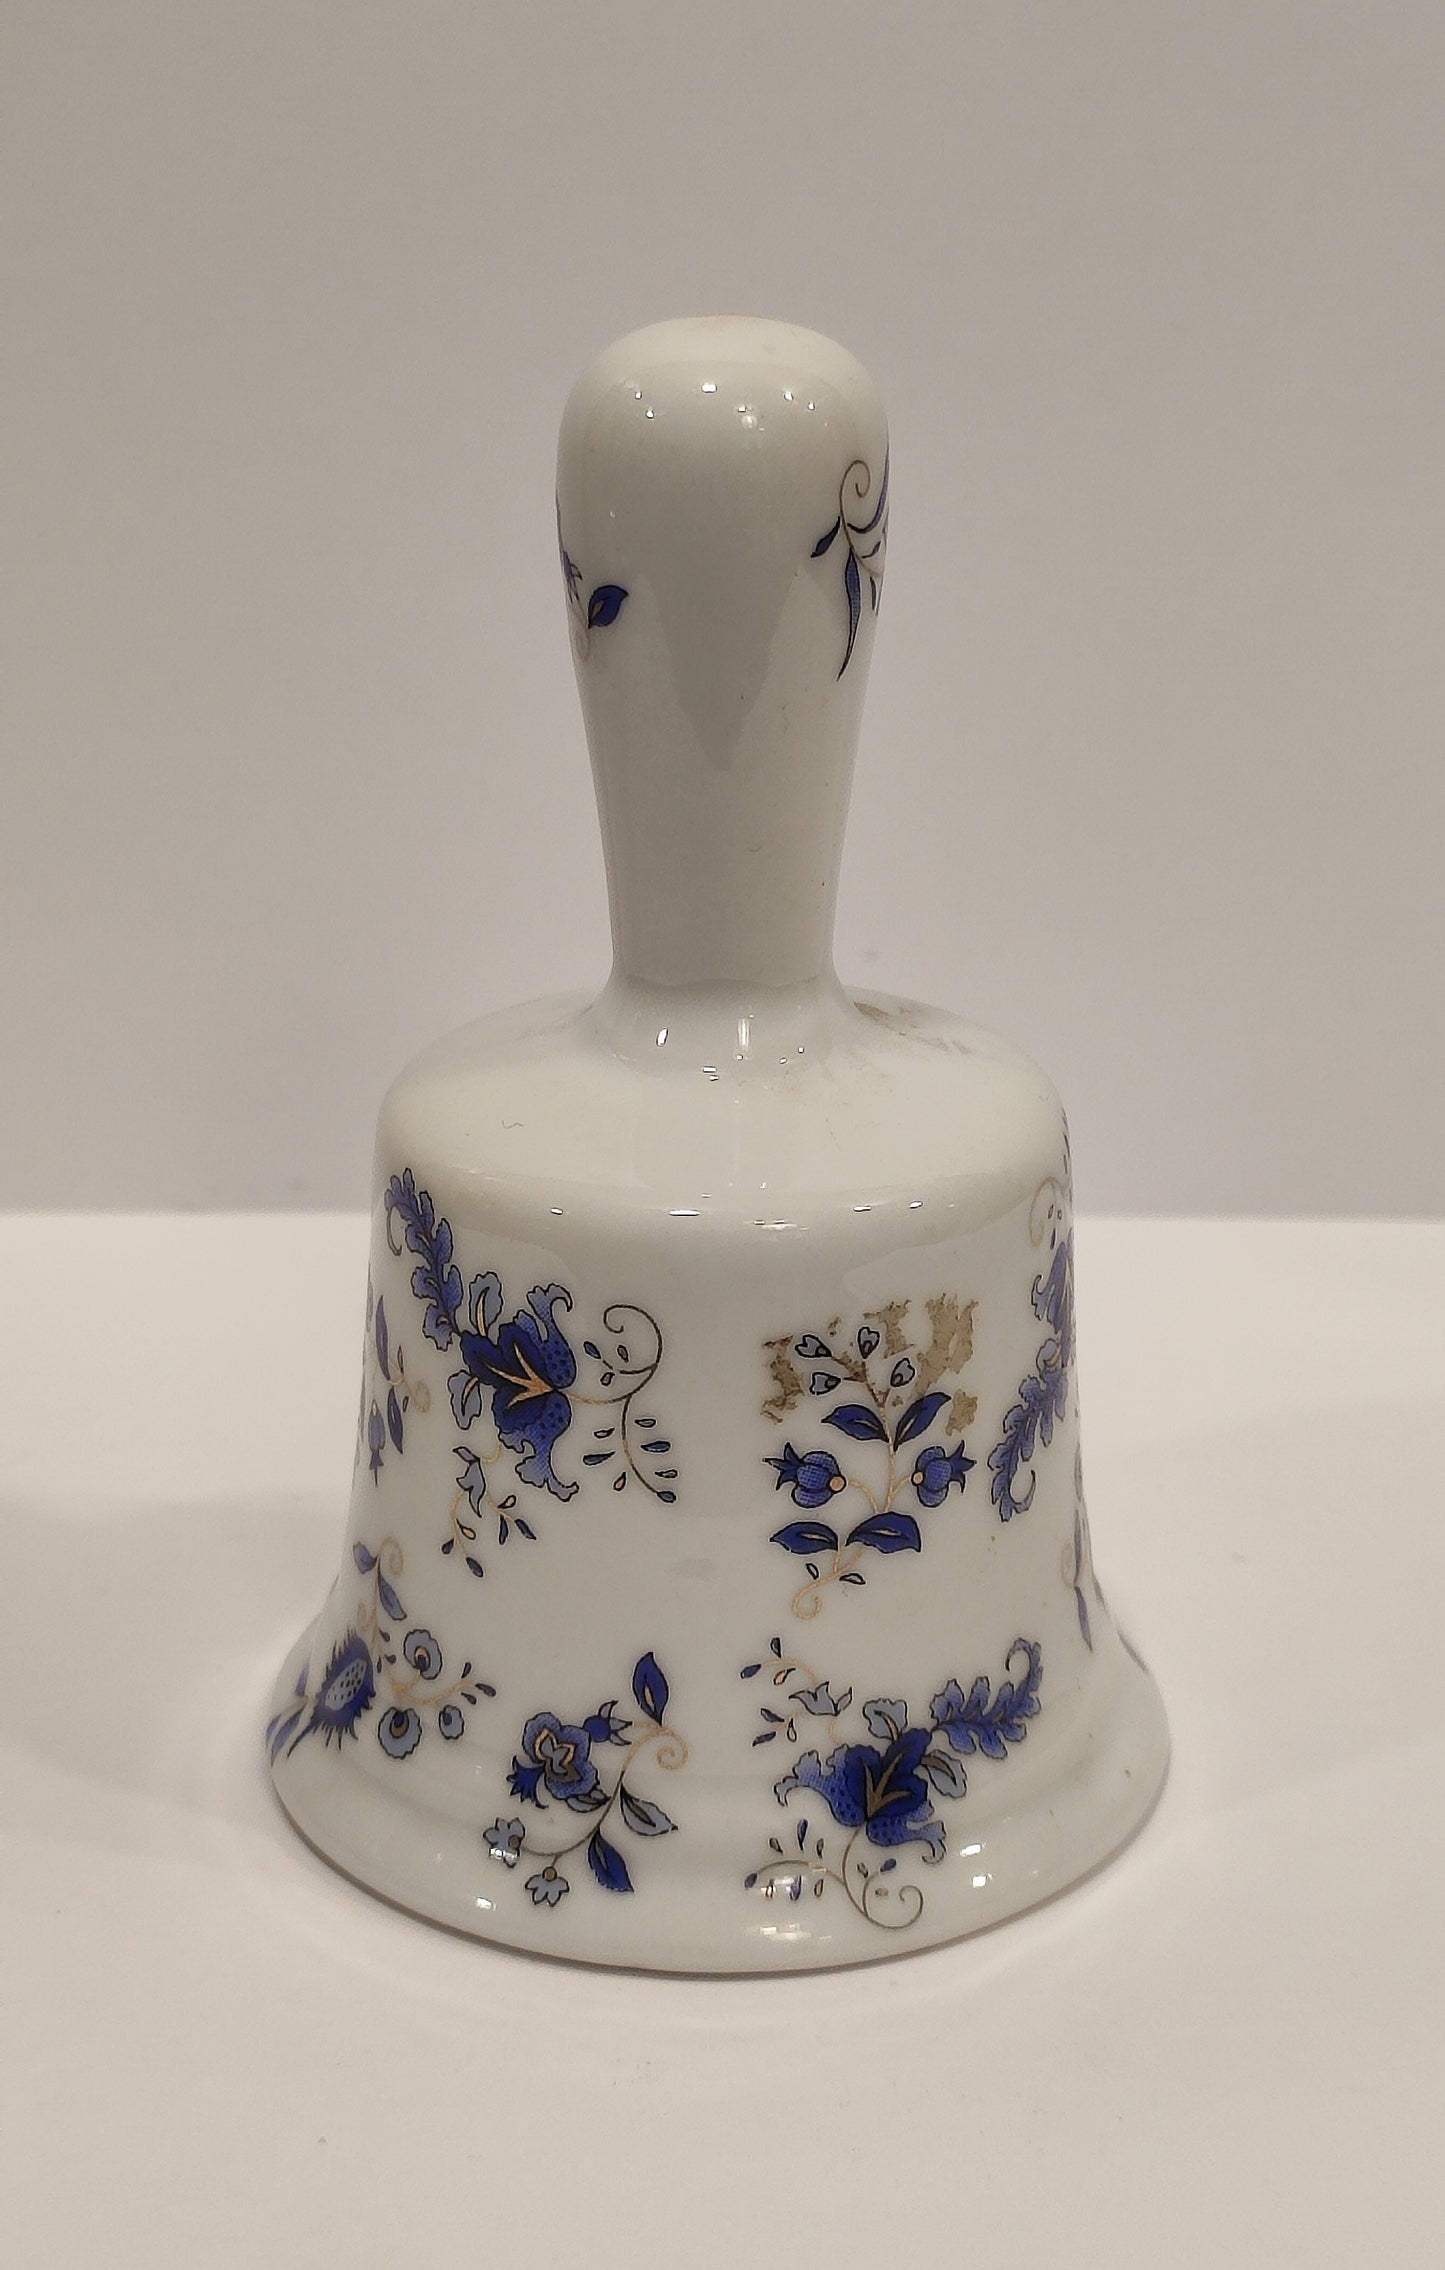 Campanilla de porcelana decorada con flores